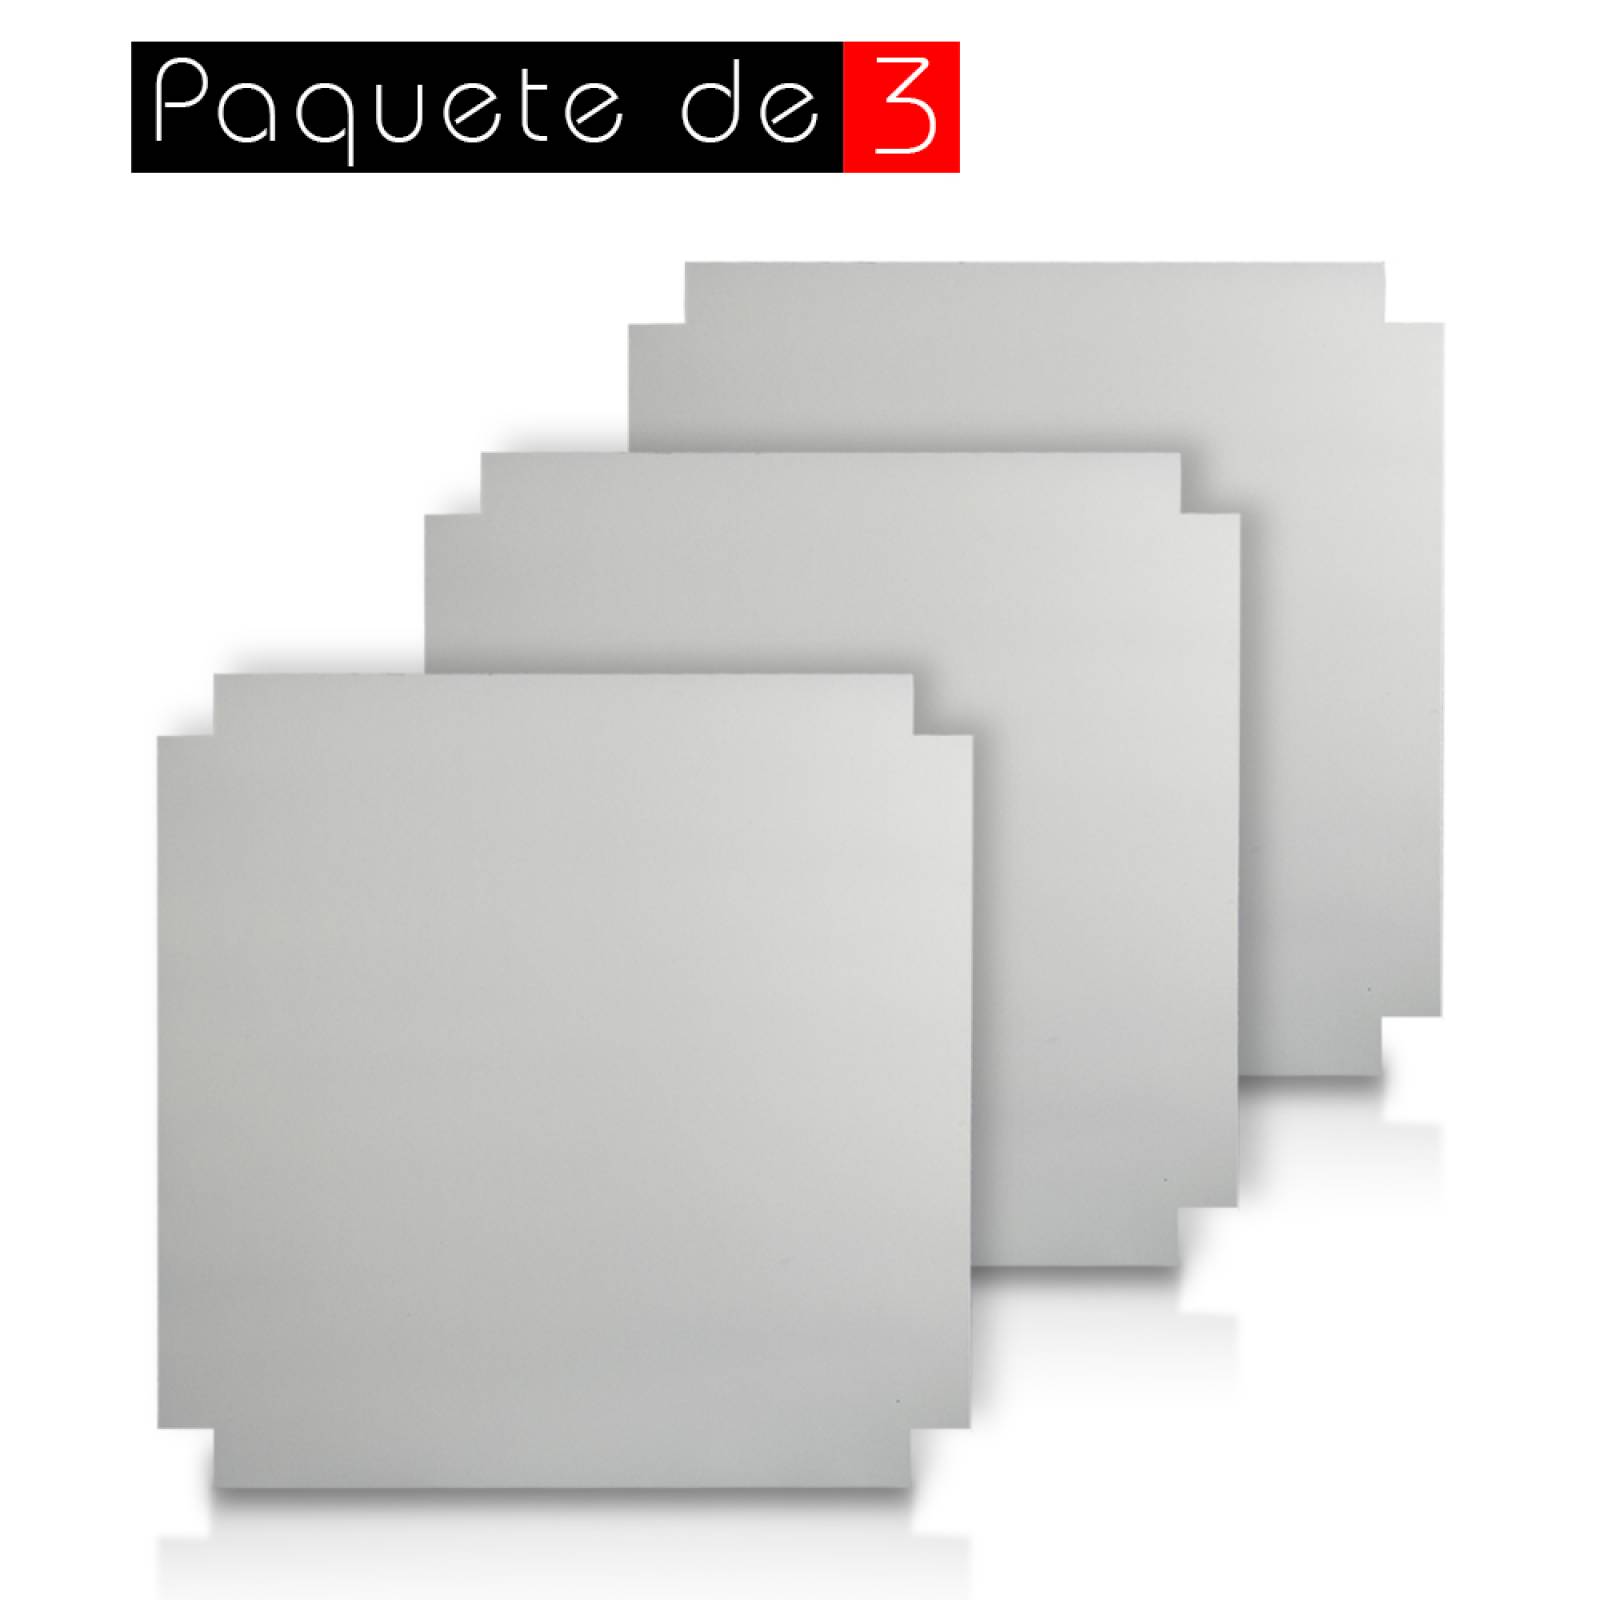 Aislante Cerámico Protector Térmico para Pared de 55 x 55 cm Blanco, Paquete 3 Piezas, Mod: 1PTPP3Bl